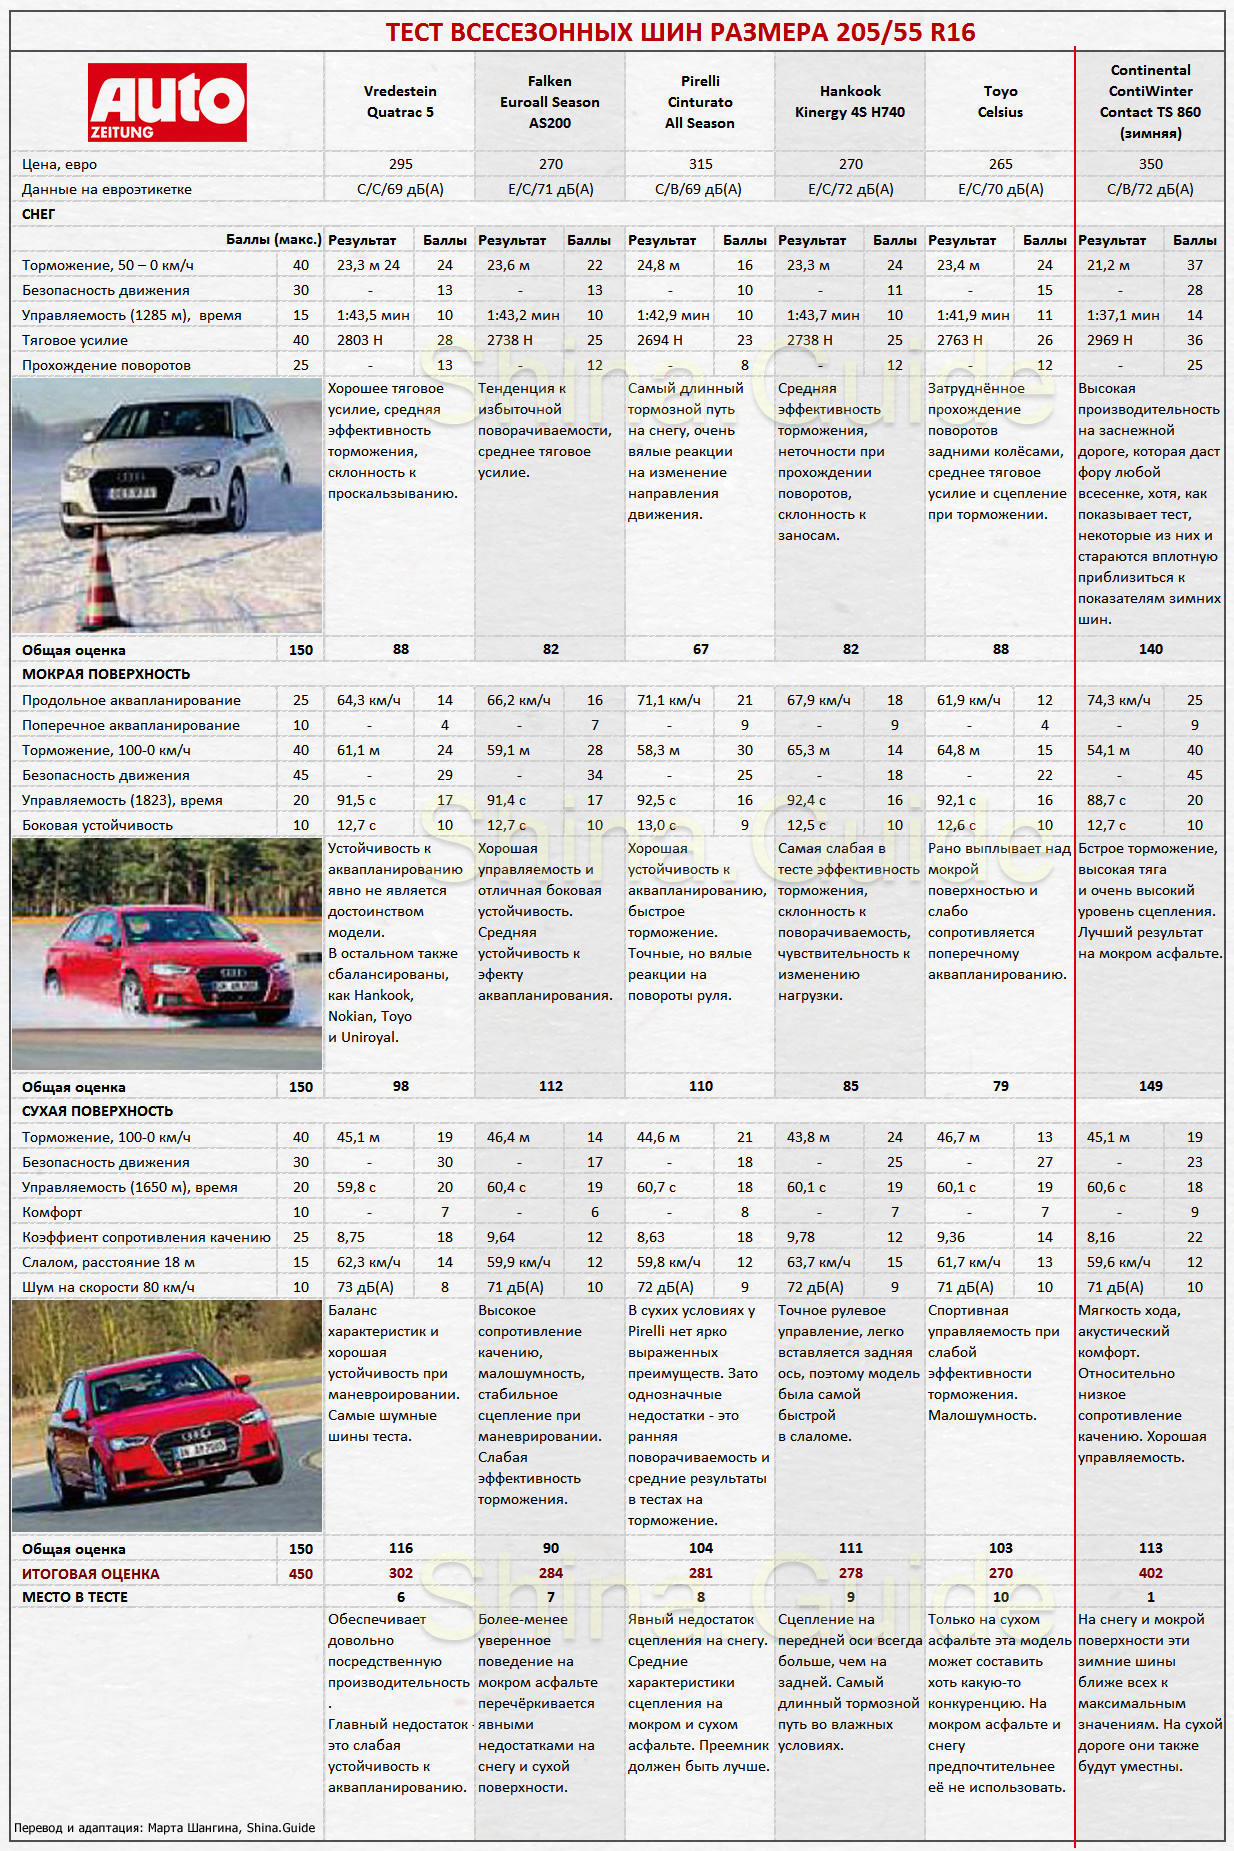 Сводная таблица результатов теста всесезонных шин 205/55 R16 от Auto Zeitung, 2017. Места с 6 по 10